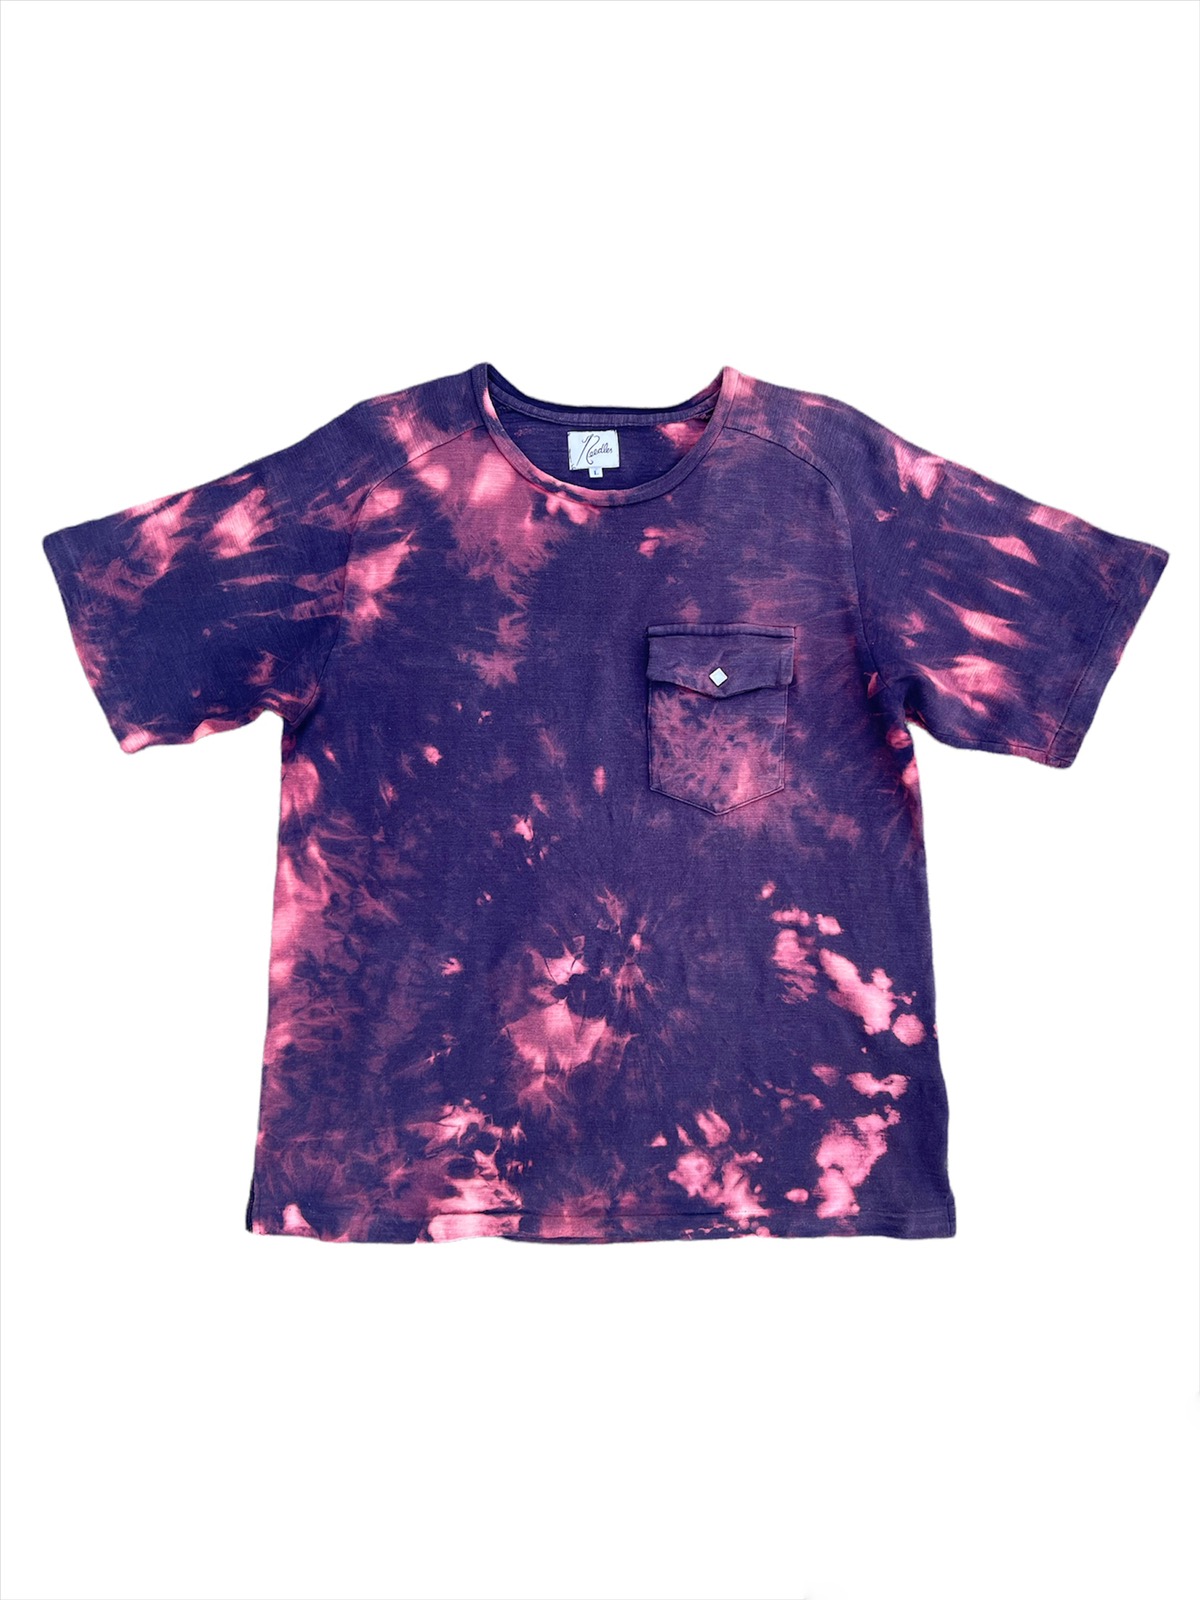 🔥🔥Needles Nepenthes Flaming Acid Wash single pocket Shirt - 1